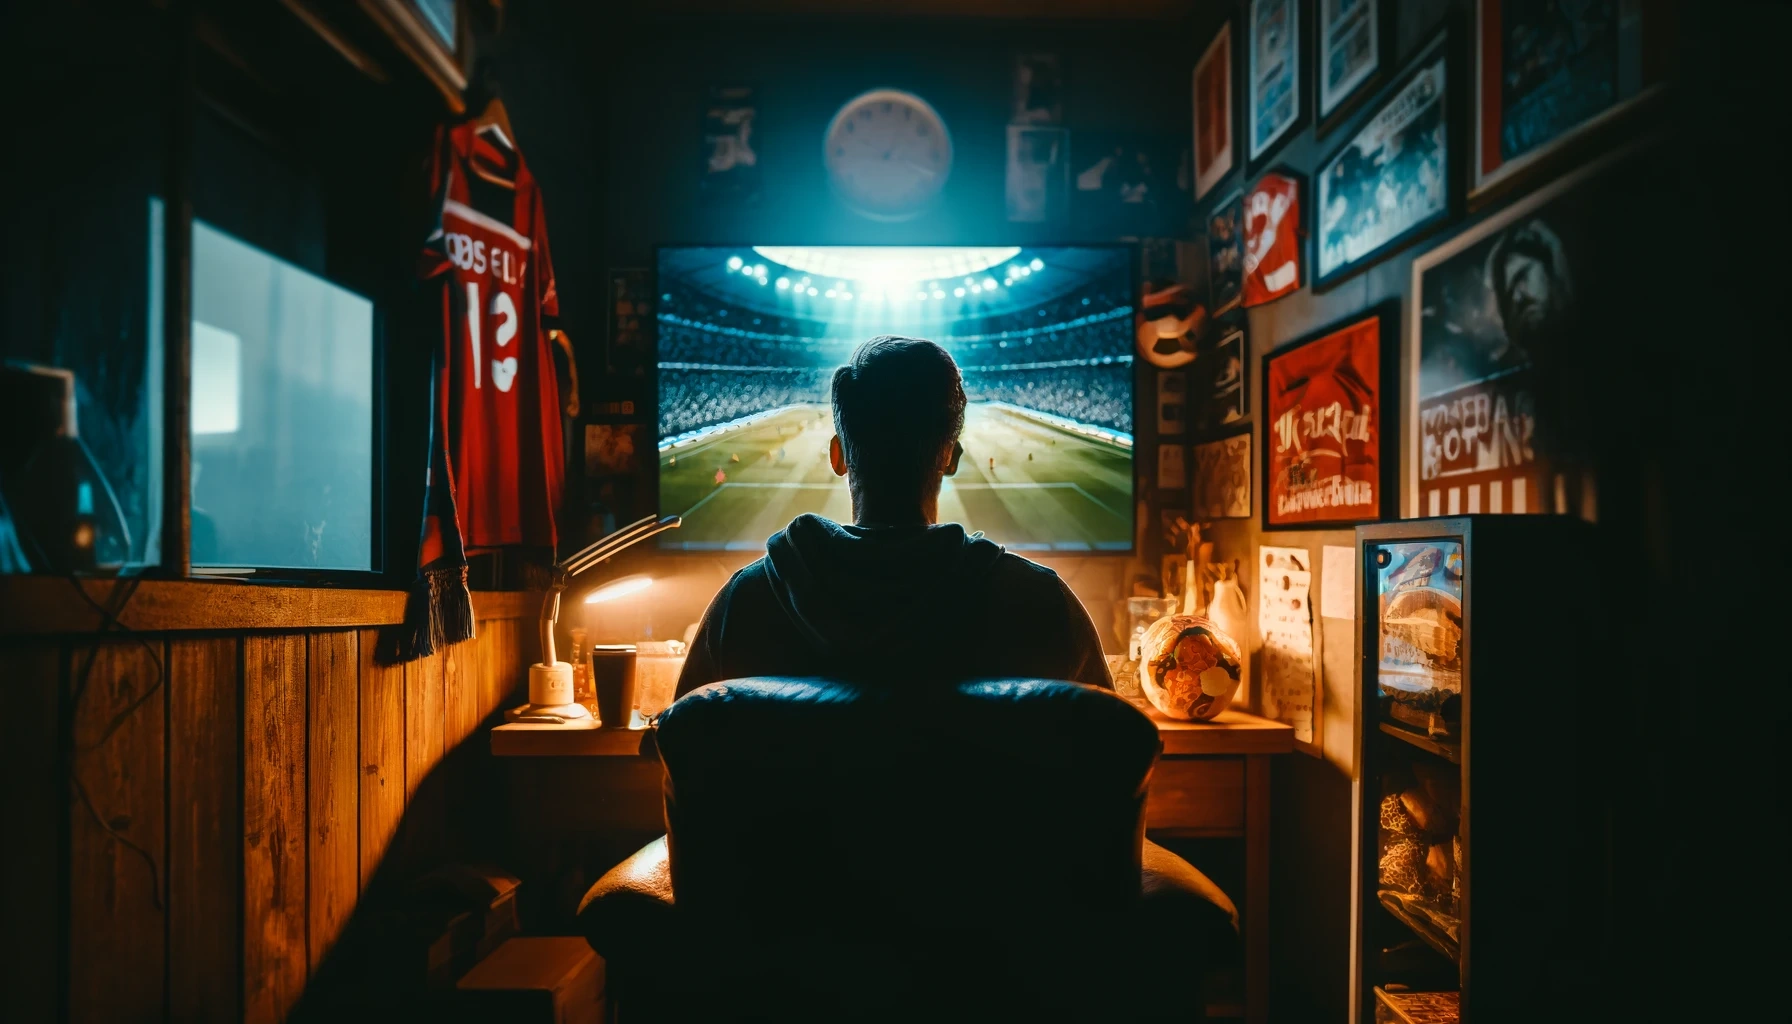 Apprenez comment regarder facilement le football en ligne sur votre smartphone